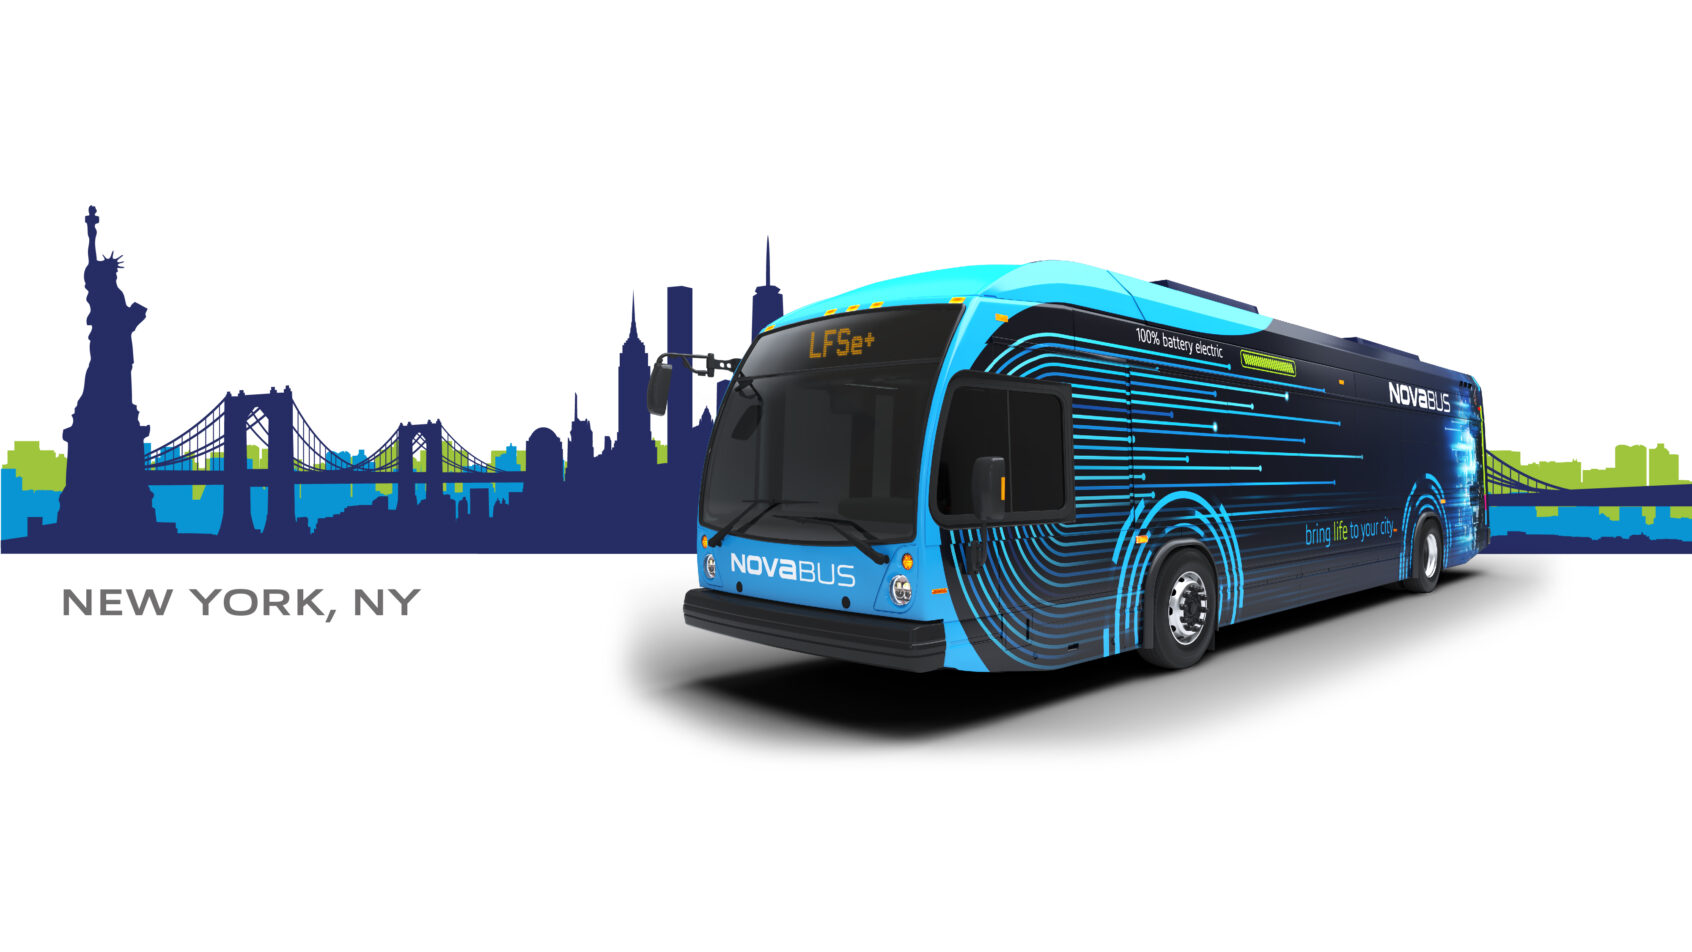 La New York State Metropolitan Transportation Authority (MTA) commande cinq LFSe+, le modèle d’autobus 100% électrique de Nova Bus